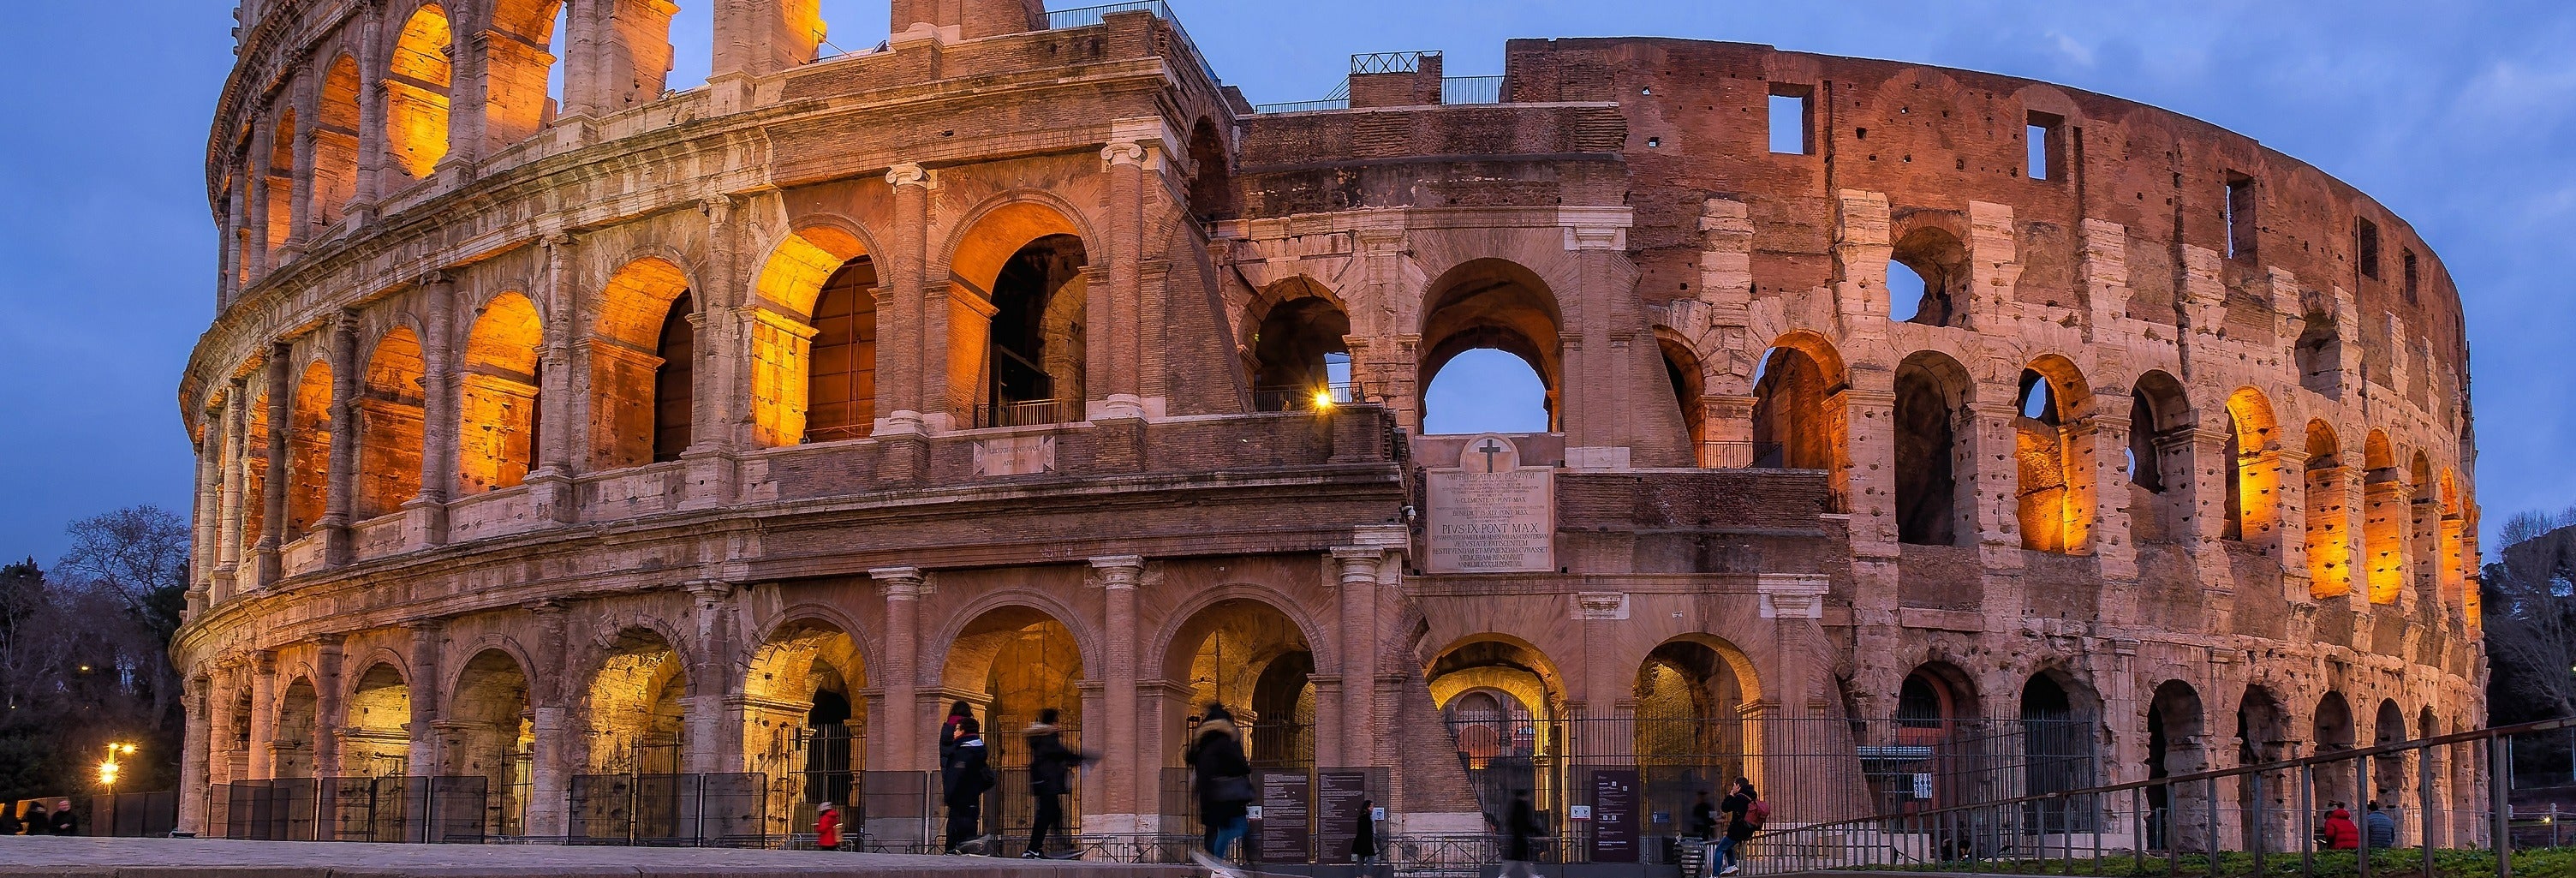 Descobrindo a Eterna Beleza de Roma: Dicas para uma Viagem Inesquecível com Tours Guiados em Português